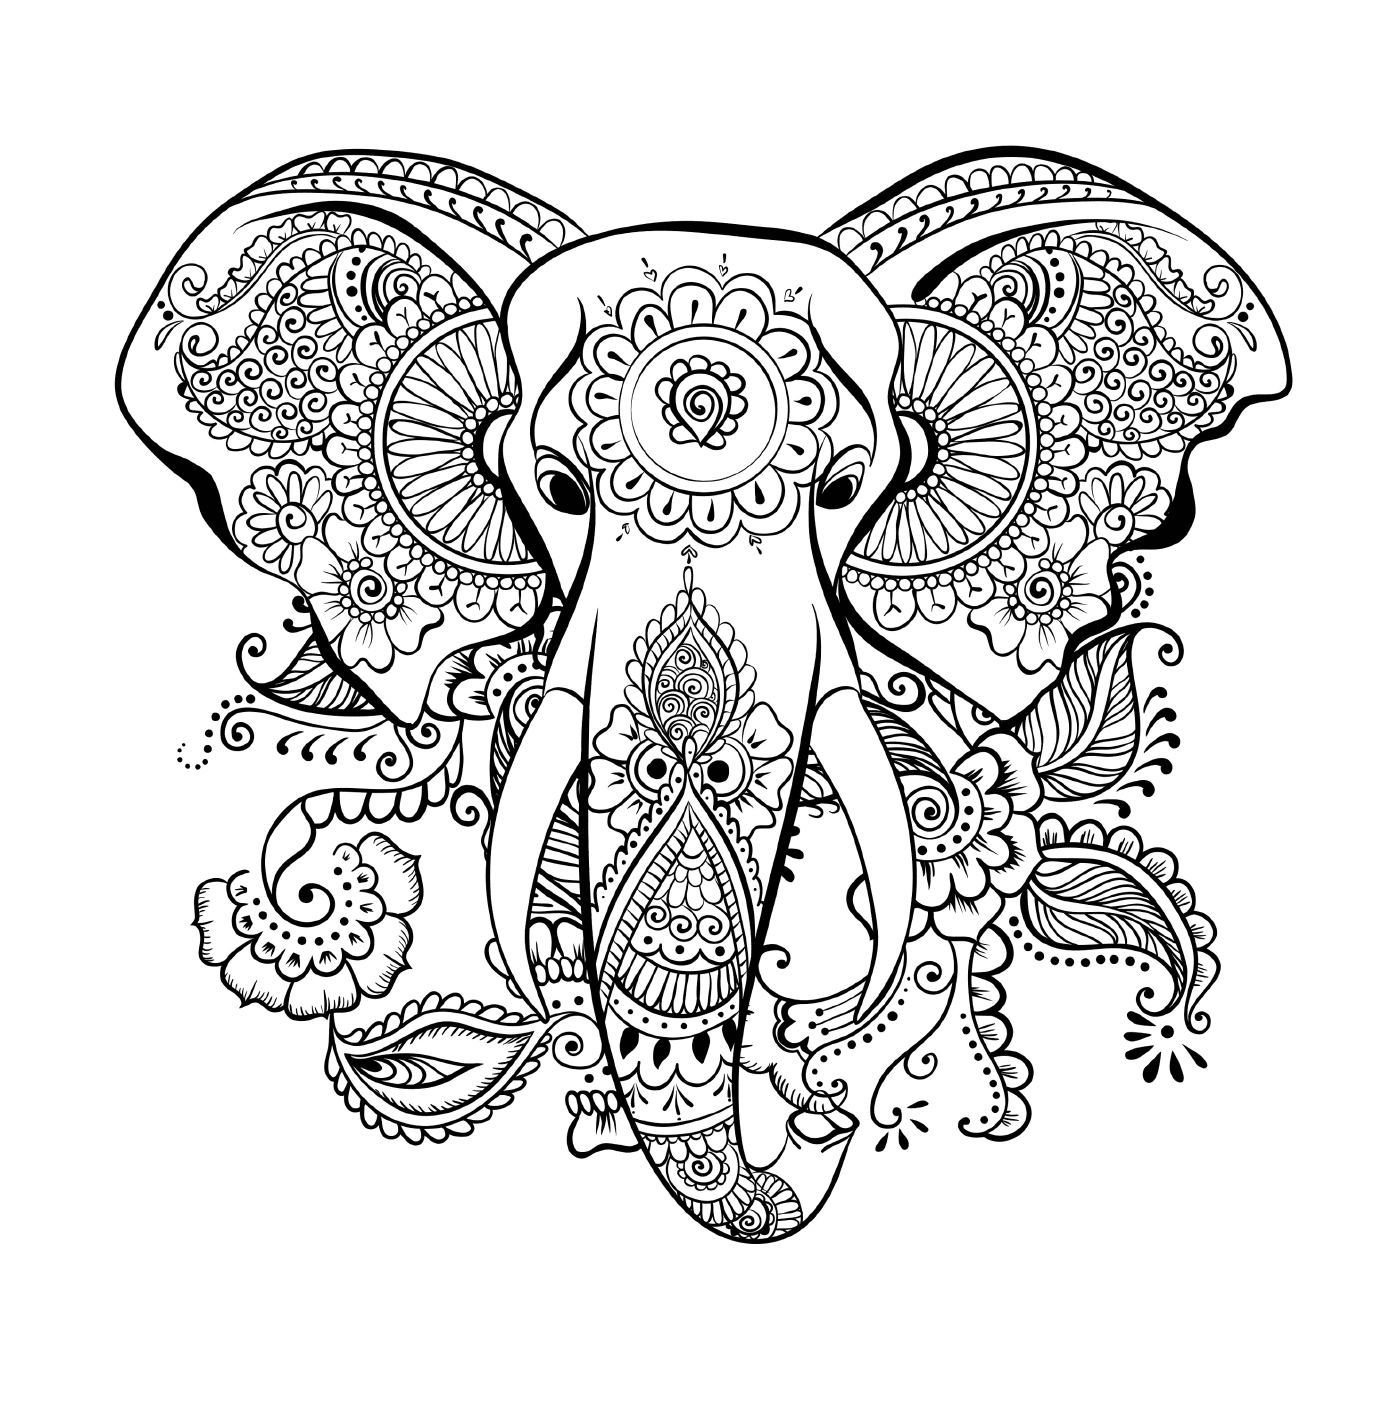   Un éléphant avec un motif floral sur sa tête 